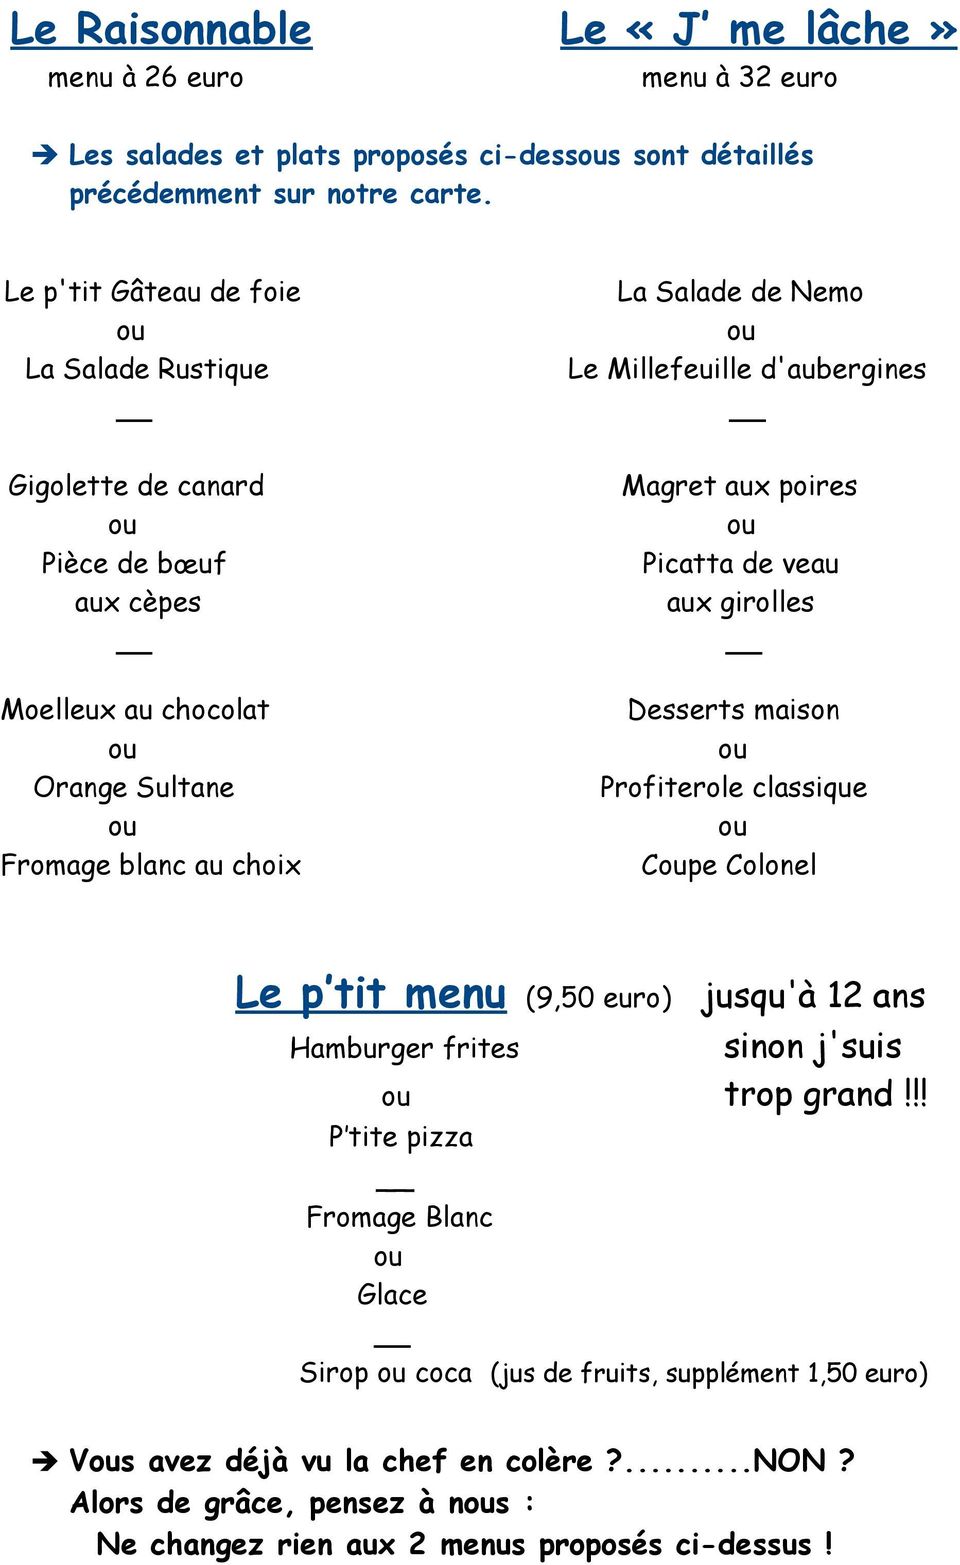 d'aubergines Magret aux poires Picatta de veau aux girolles Desserts maison Profiterole classique Cpe Colonel Le p tit menu (9,50 euro) jusqu'à 12 ans sinon j'suis trop grand!